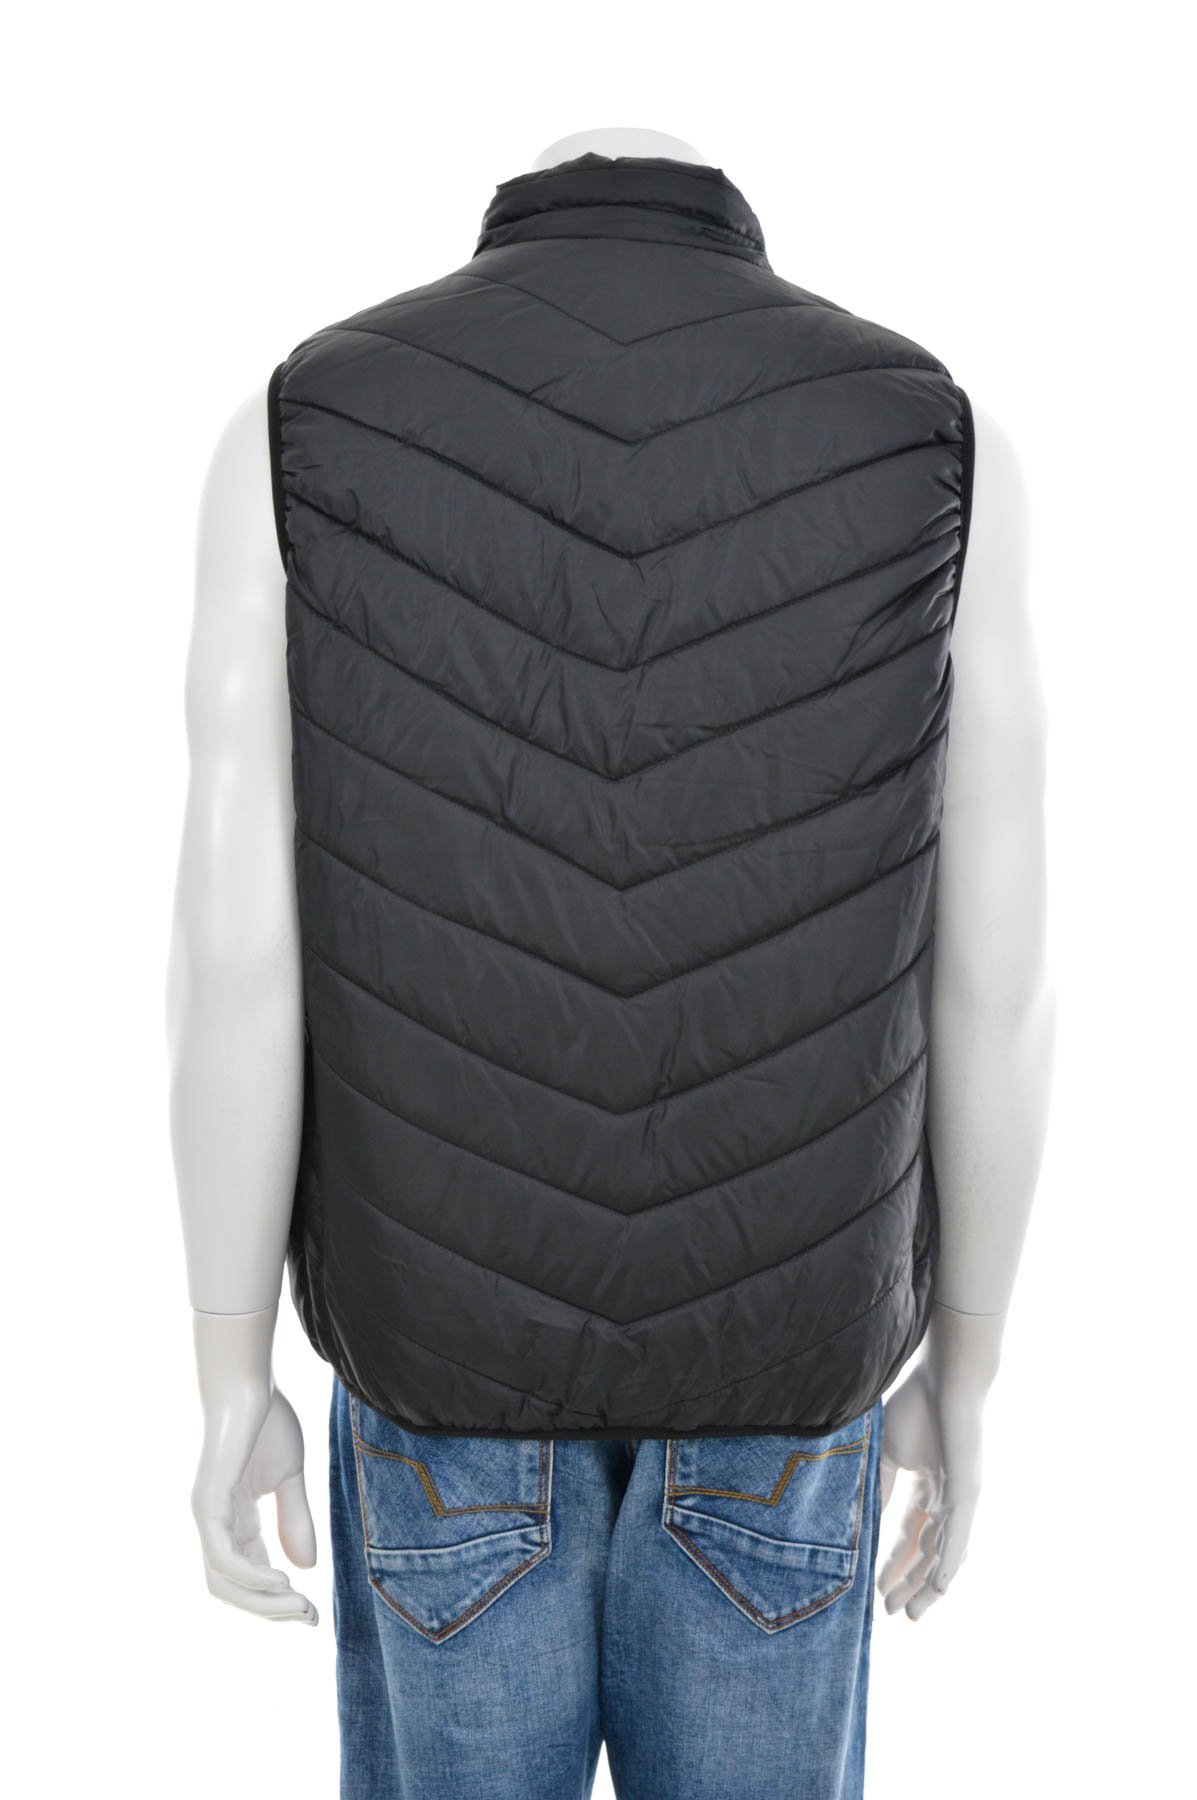 Men's vest with heater - 1